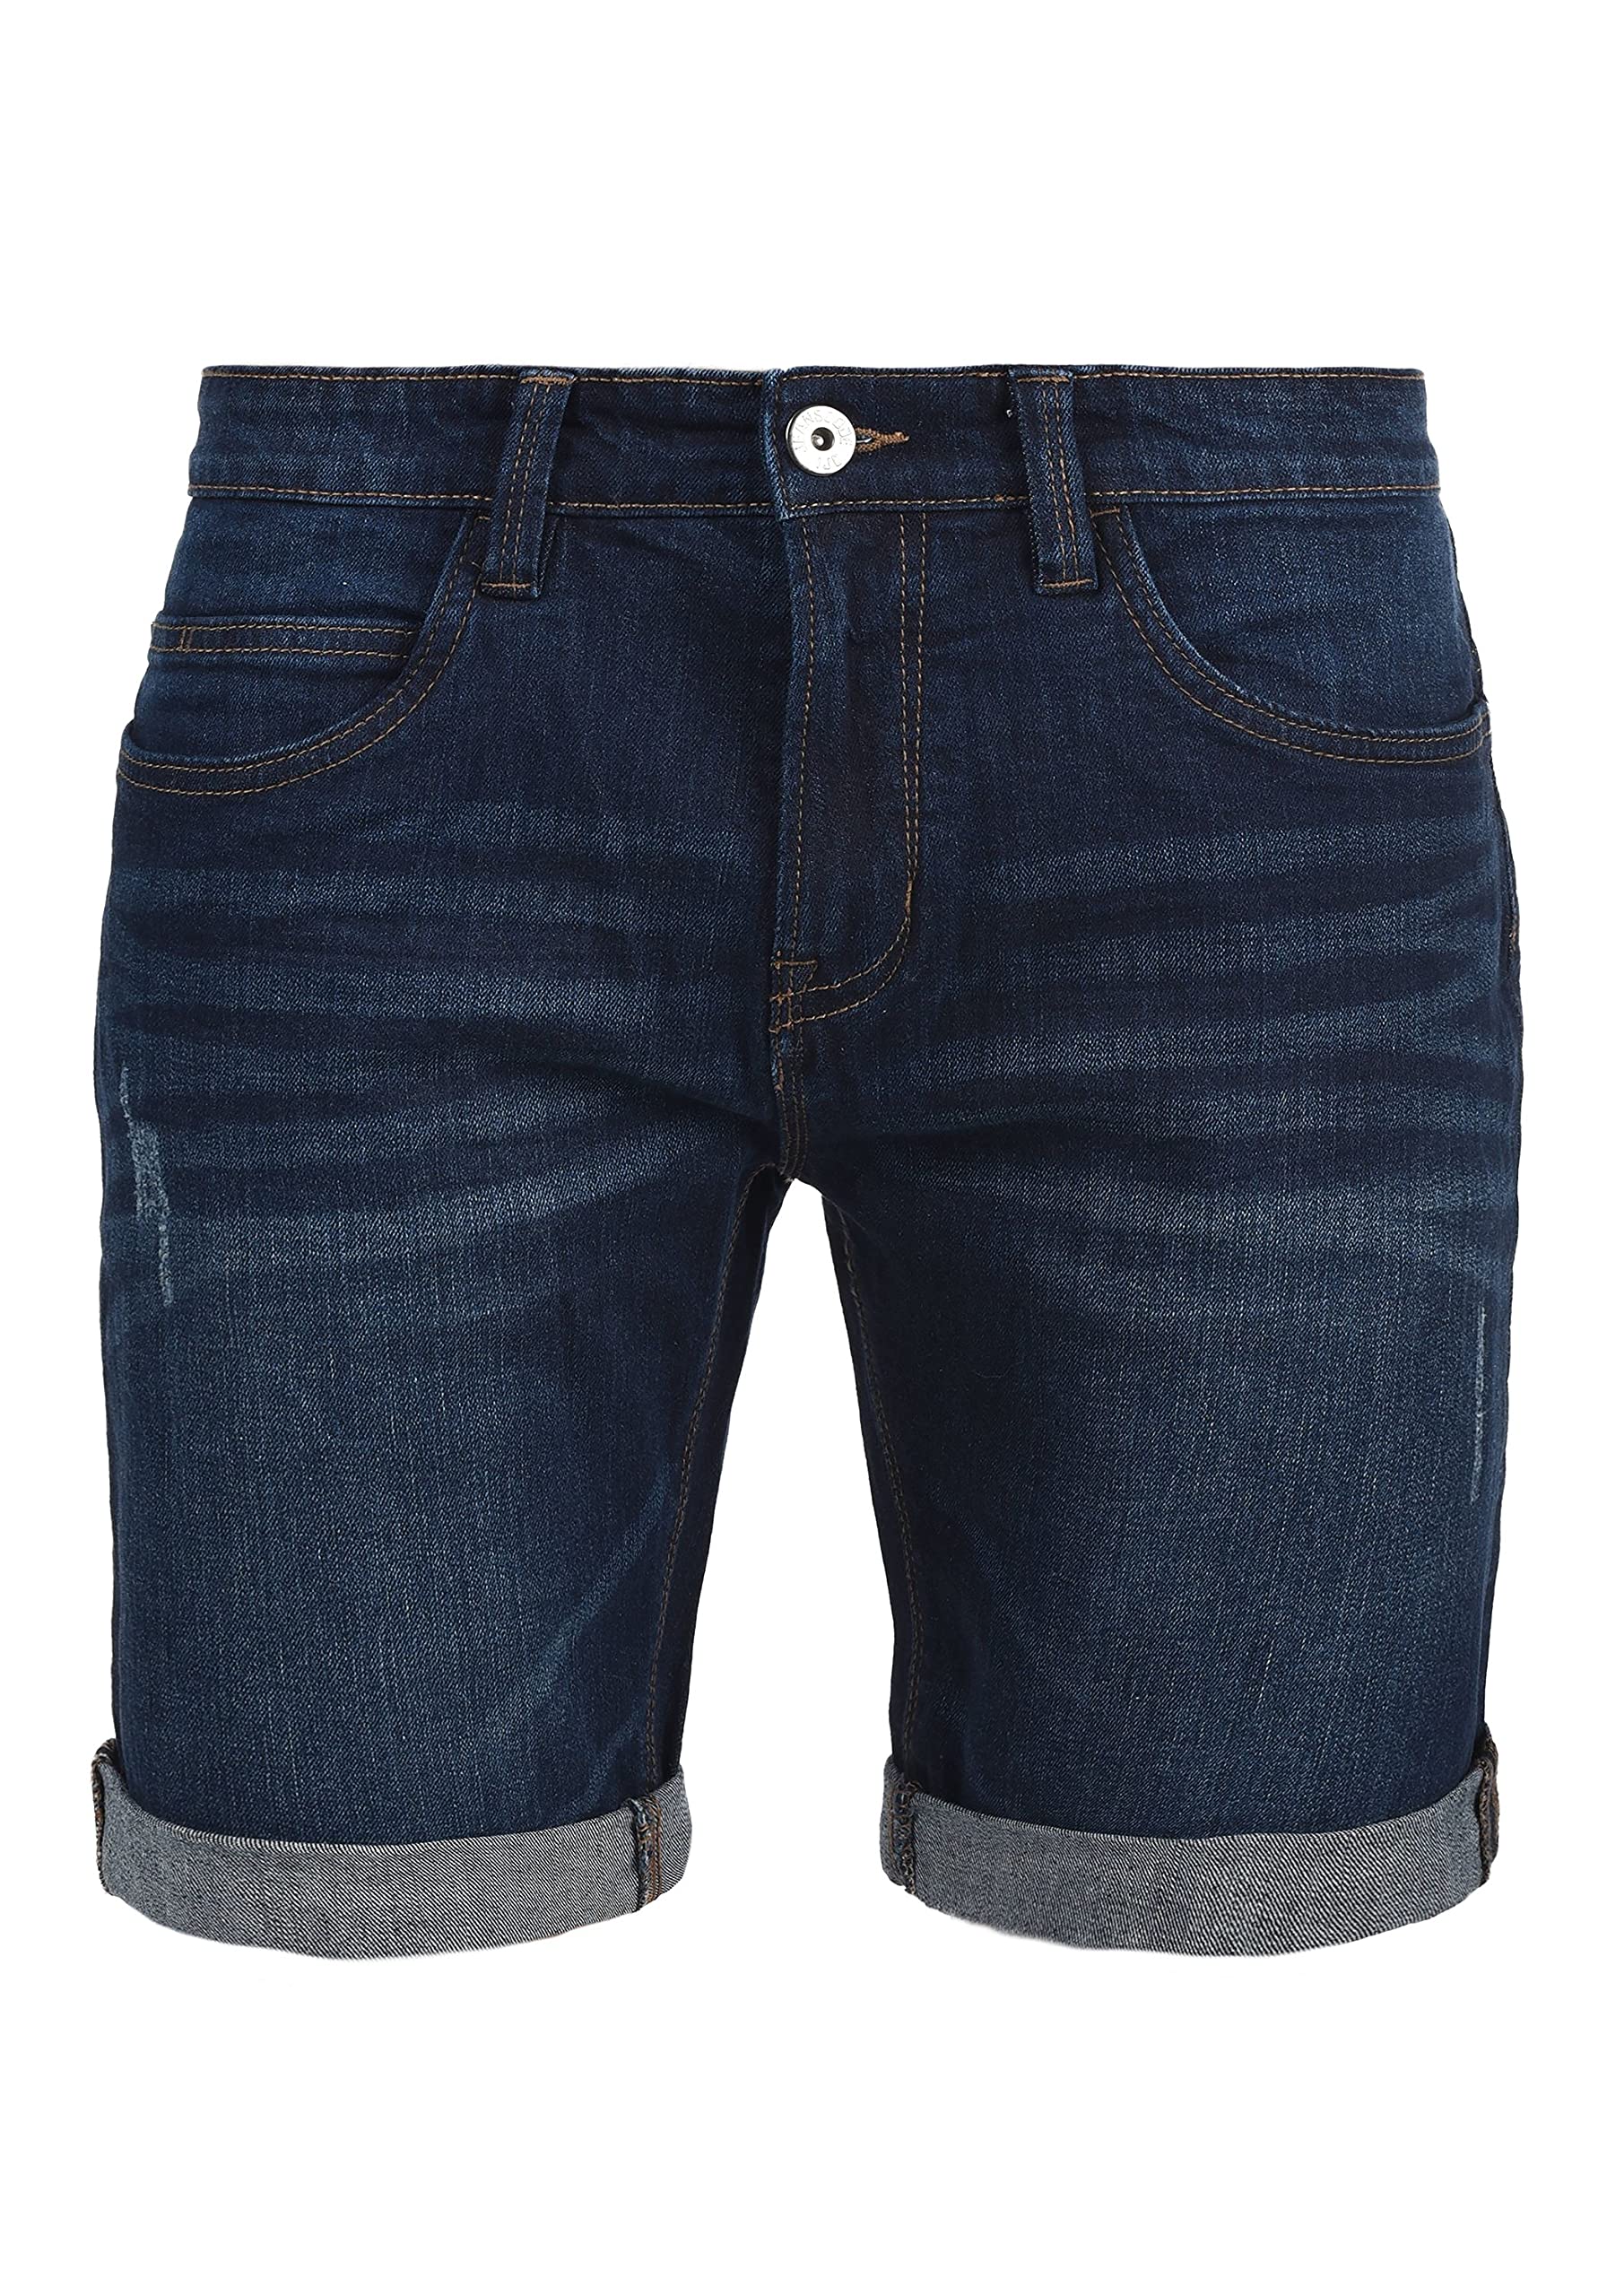 Indicode IDQuentin Herren Jeans Shorts Kurze Denim Hose im Destroyed-Optik mit Stretch, Größe:S, Farbe:Dark Blue (855)